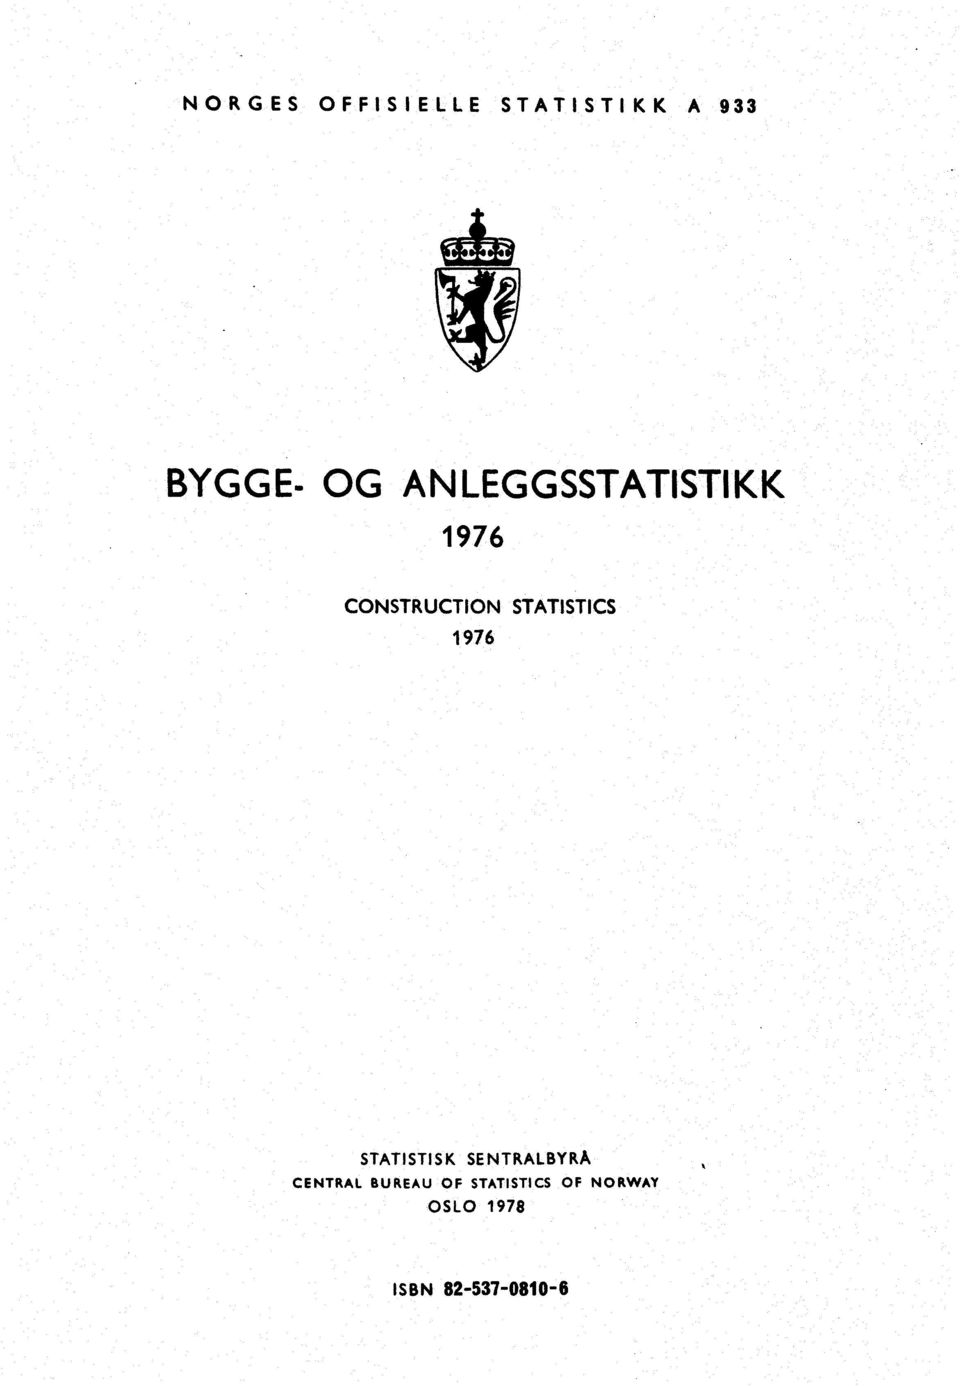 1976 STATISTISK SENTRALBYRÅ CENTRAL BUREAU OF